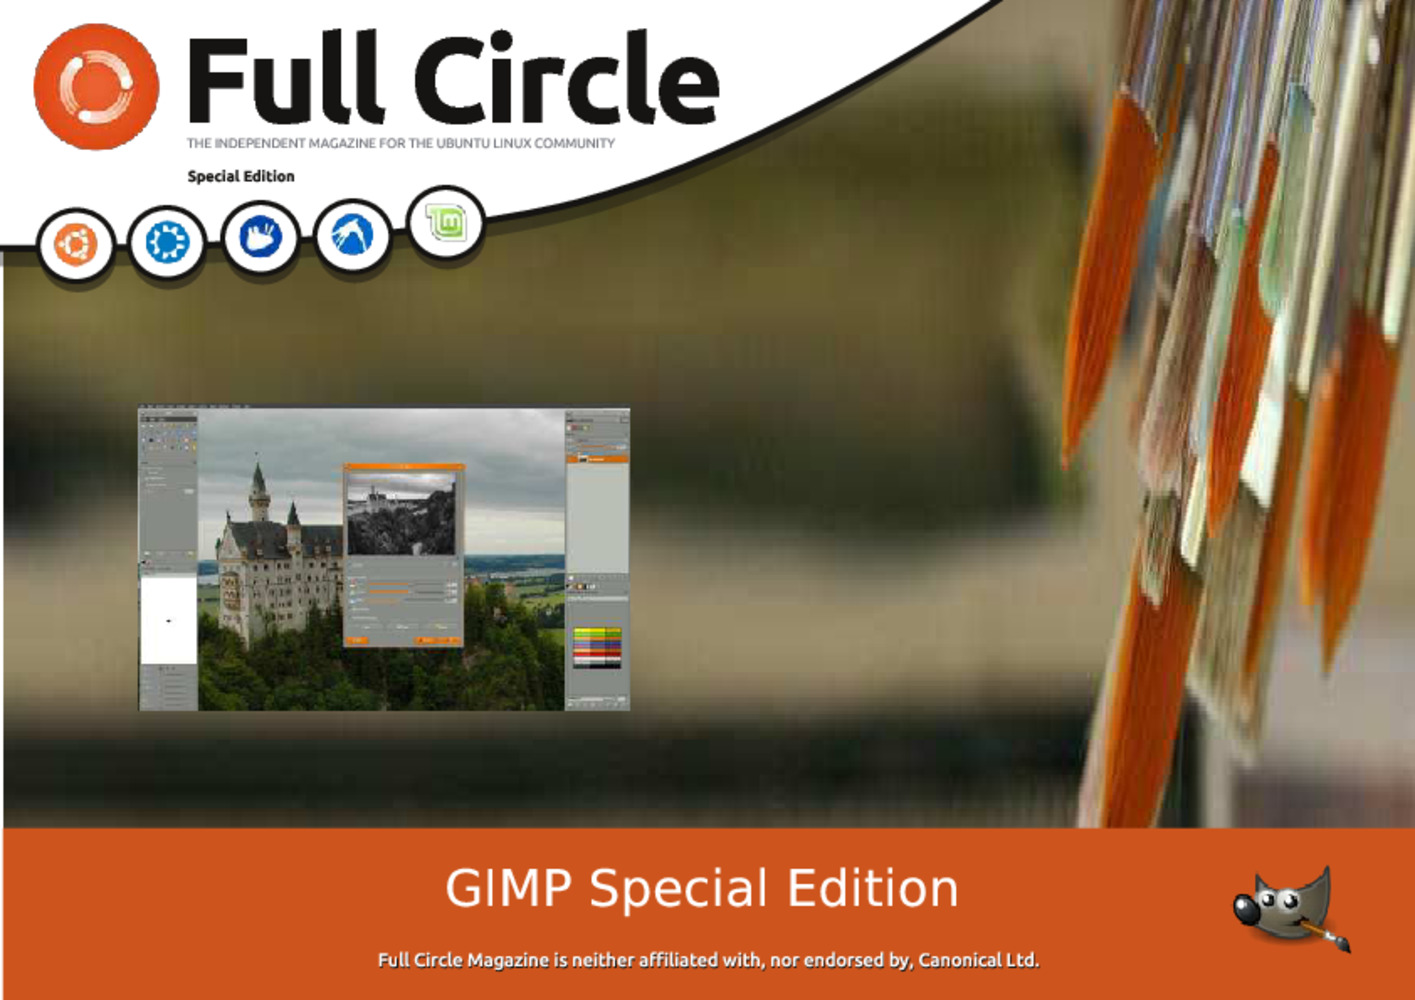 Using GIMP Special Edition